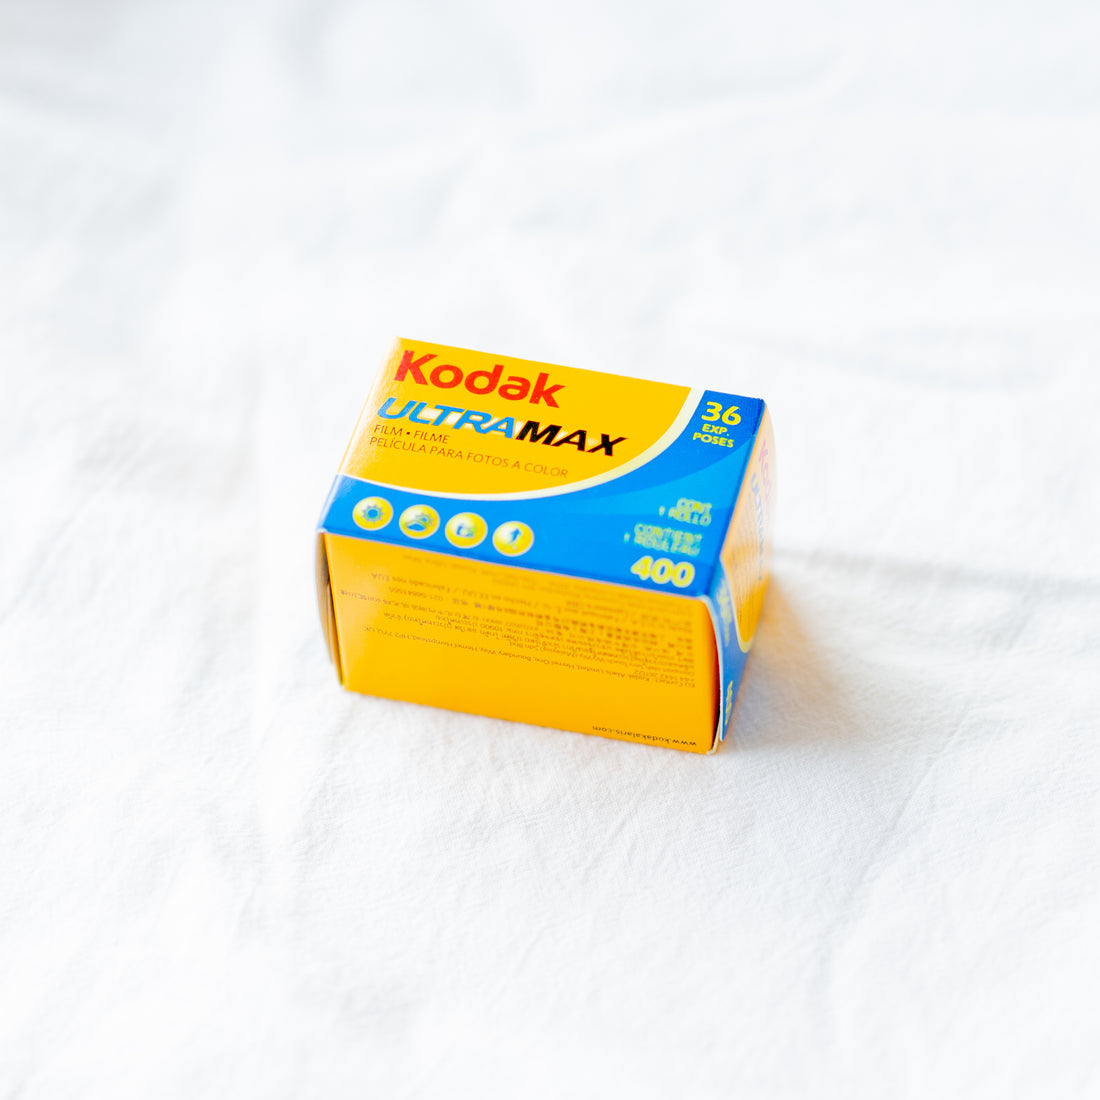 【再入荷】"Kodak ULTRAMAX 400"を再入荷しました！